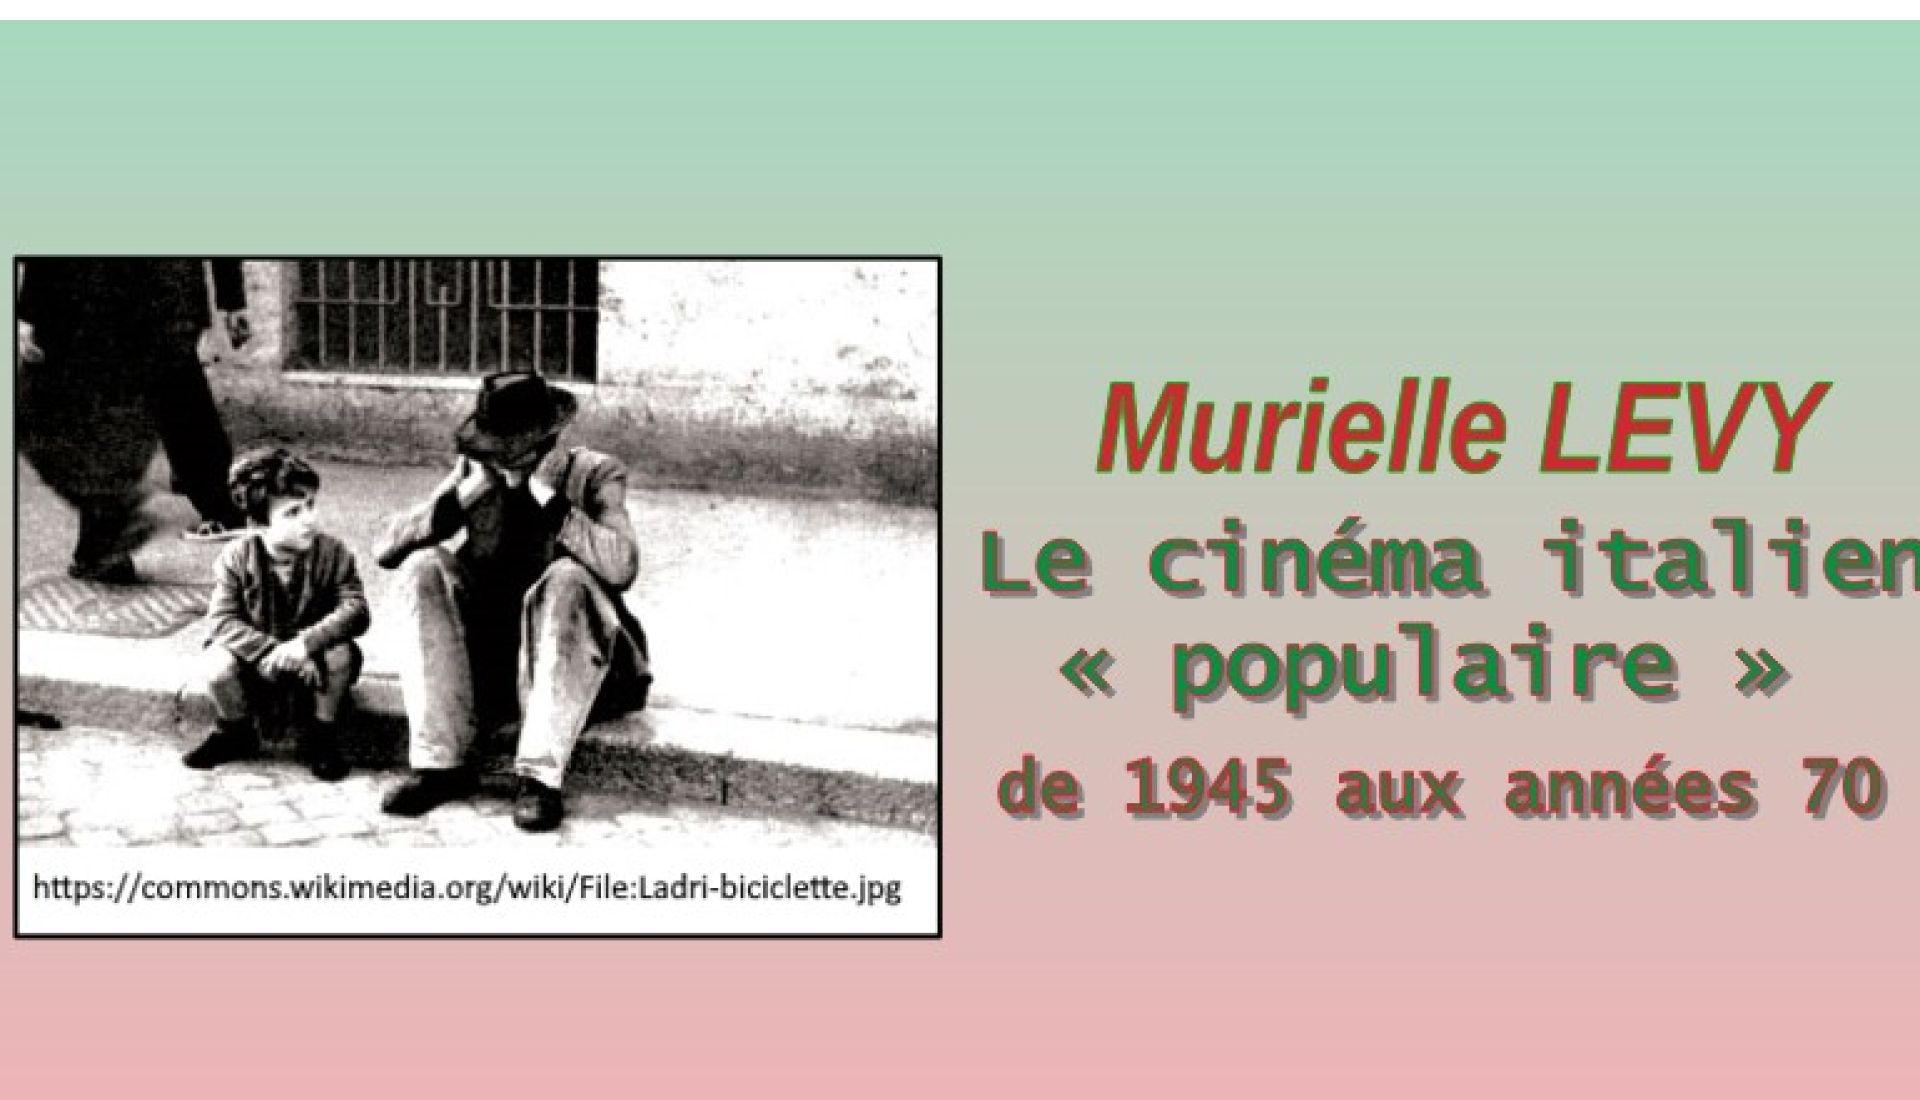 Le cinéma italien « populaire » de 1945 aux années 70